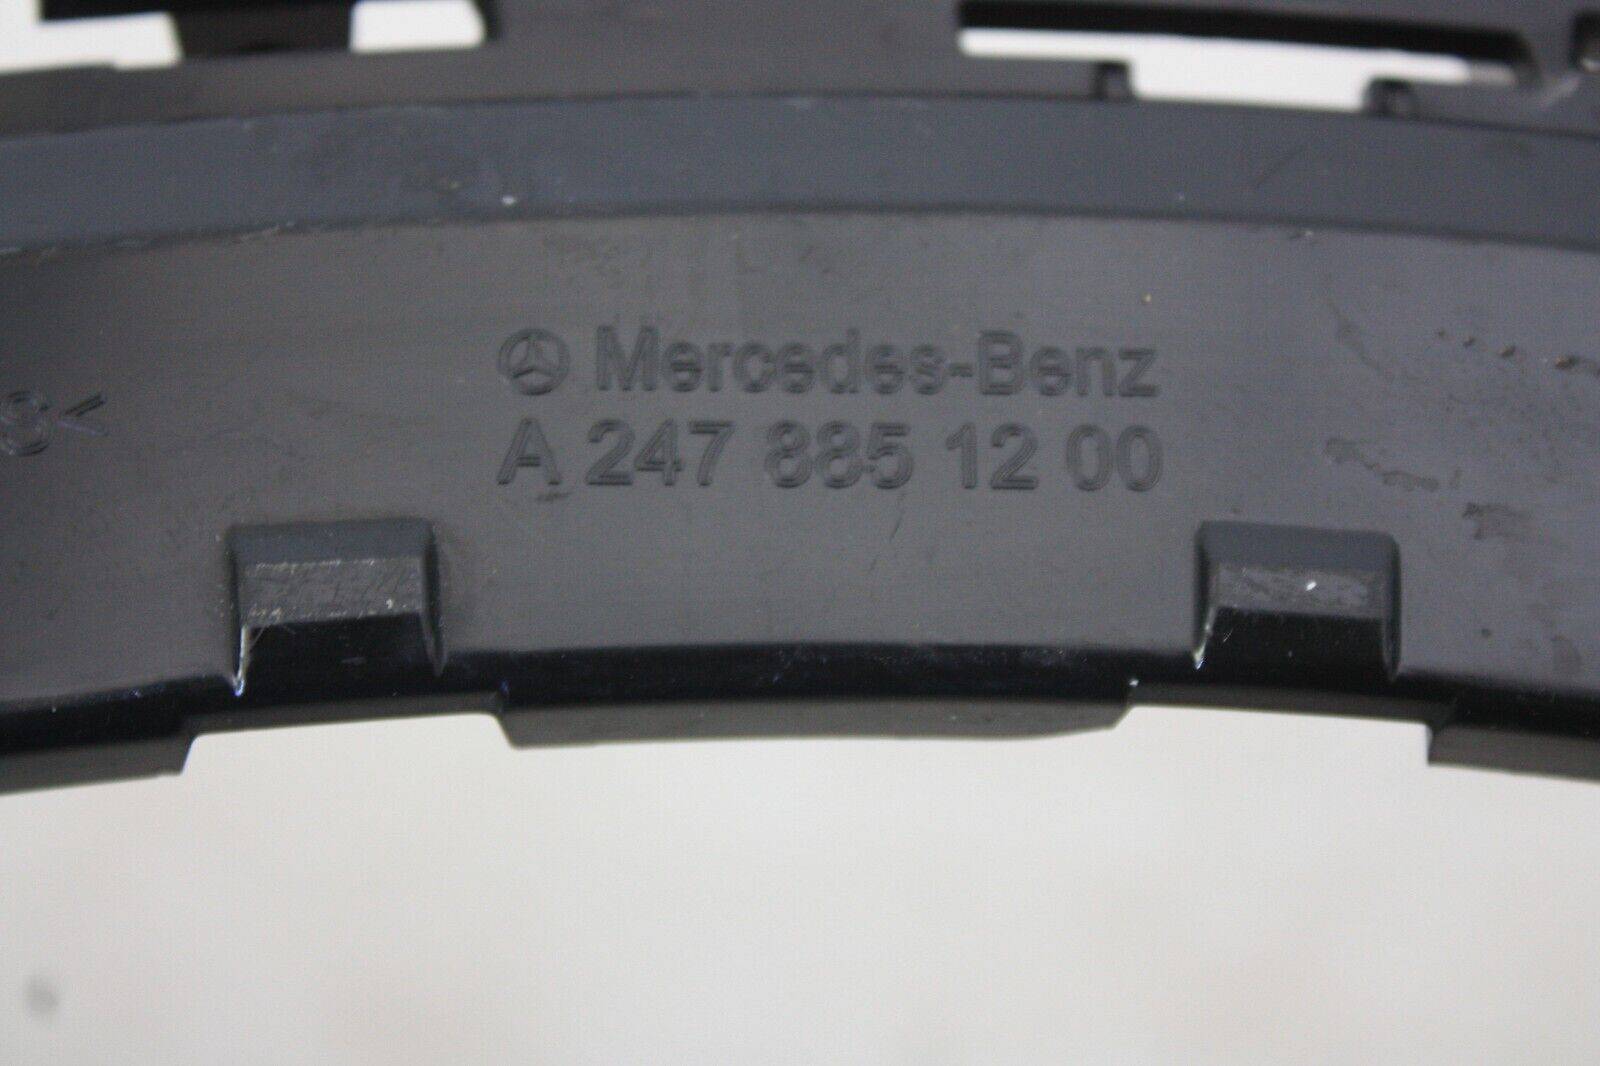 Mercedes-GLA-H247-AMG-Rear-Bumper-Right-Bracket-2020-on-A2478851200-Genuine-175600888017-10